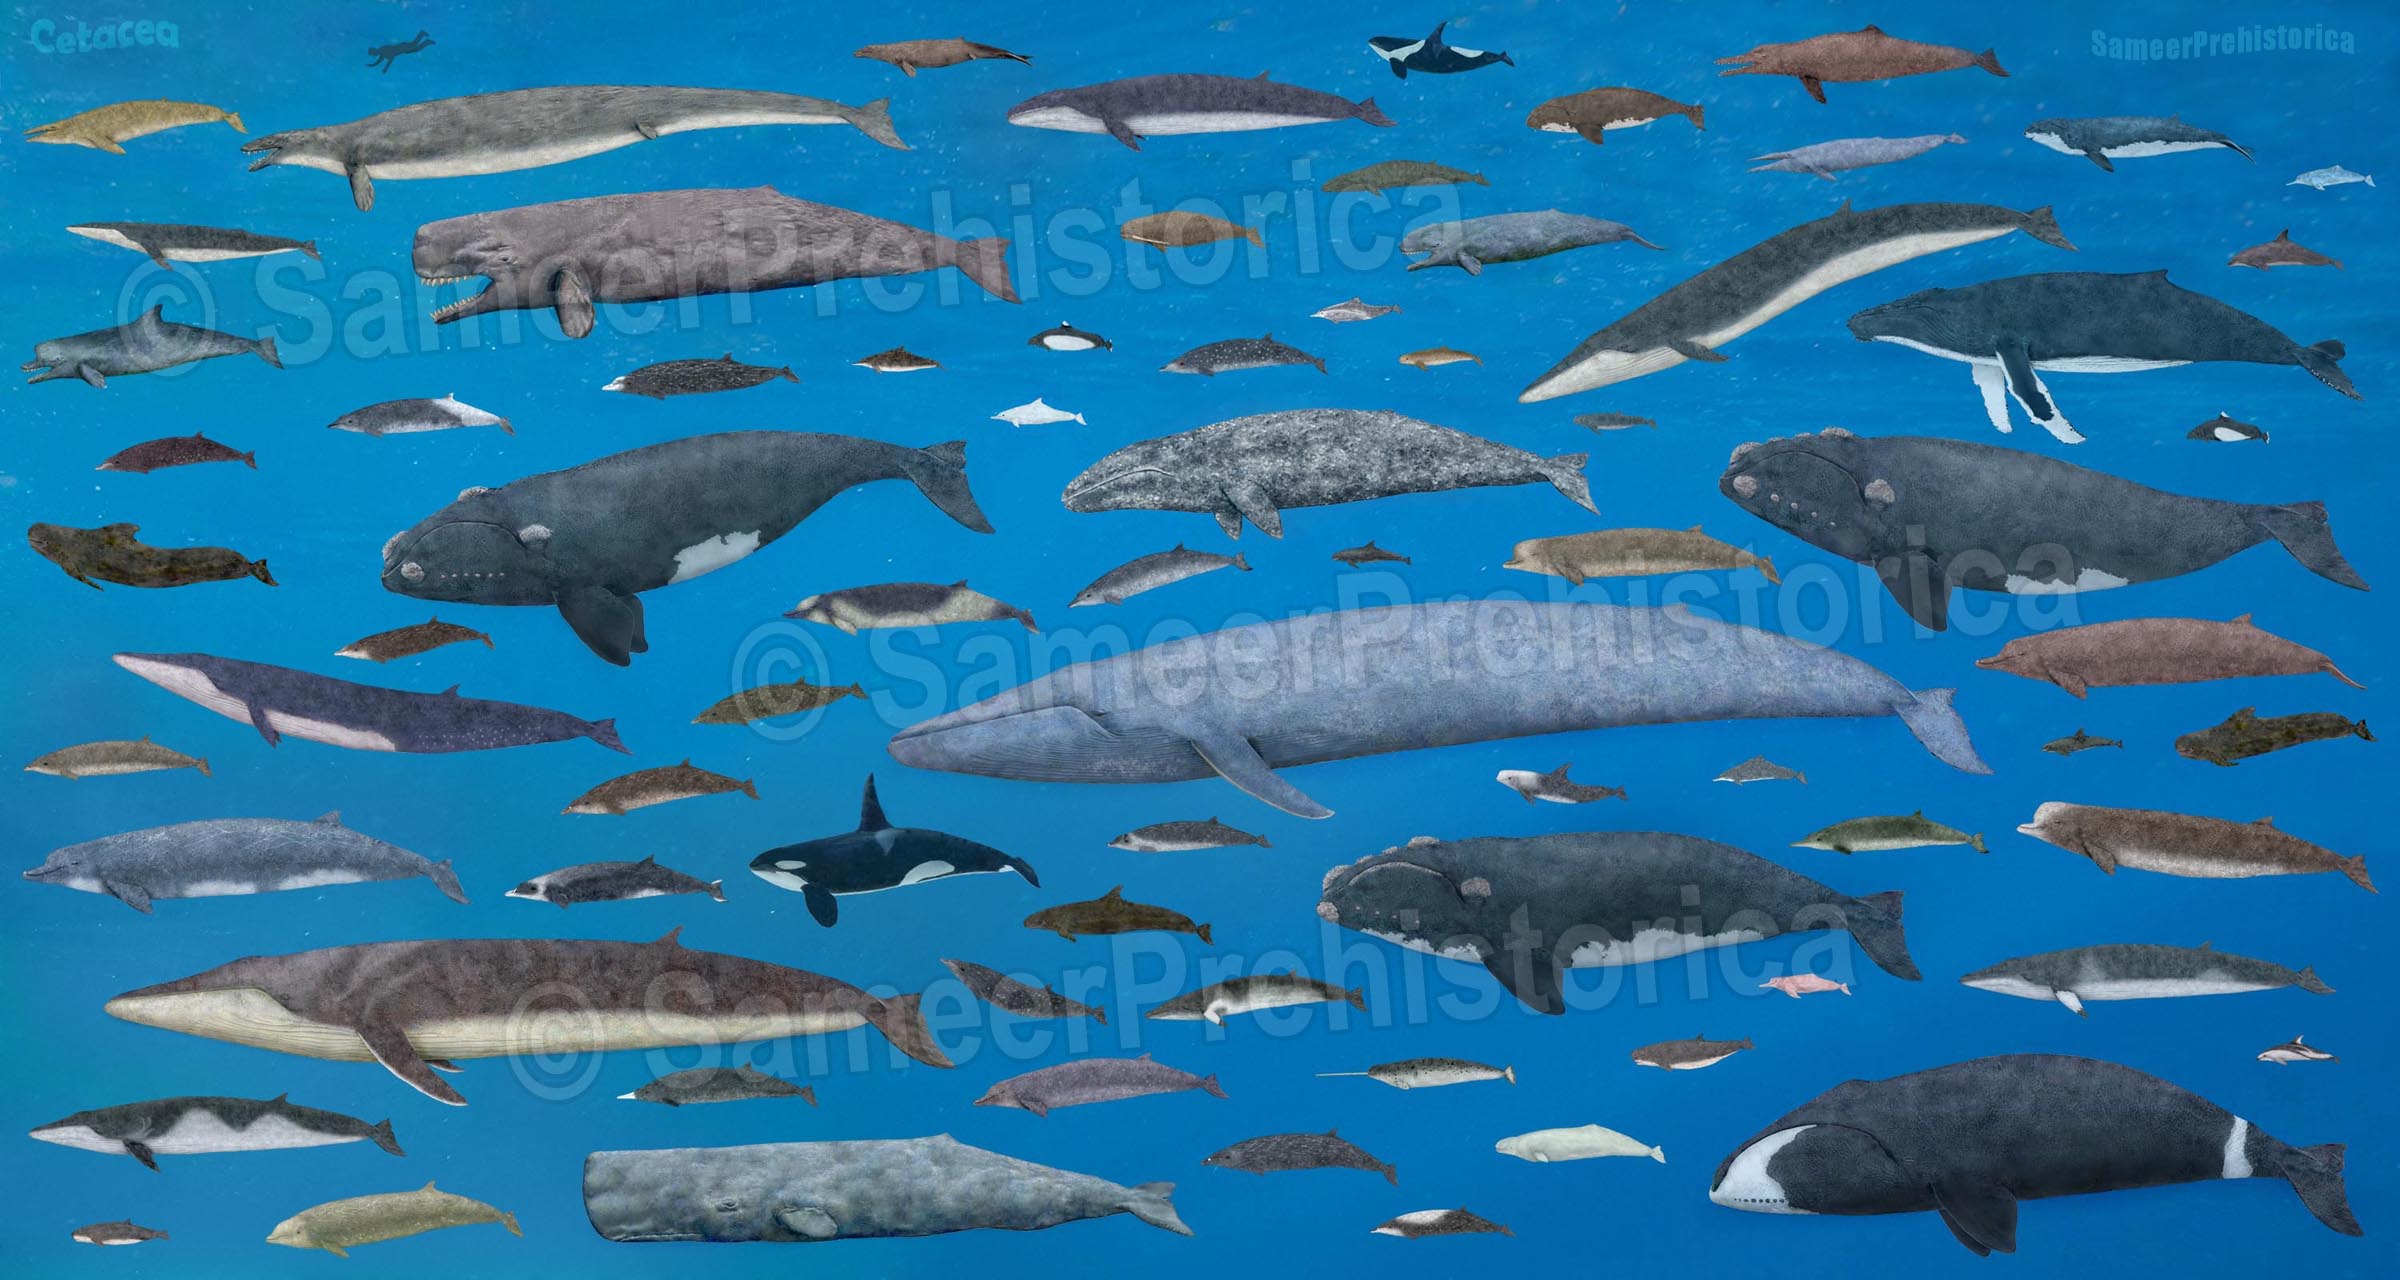 Cetaceans size